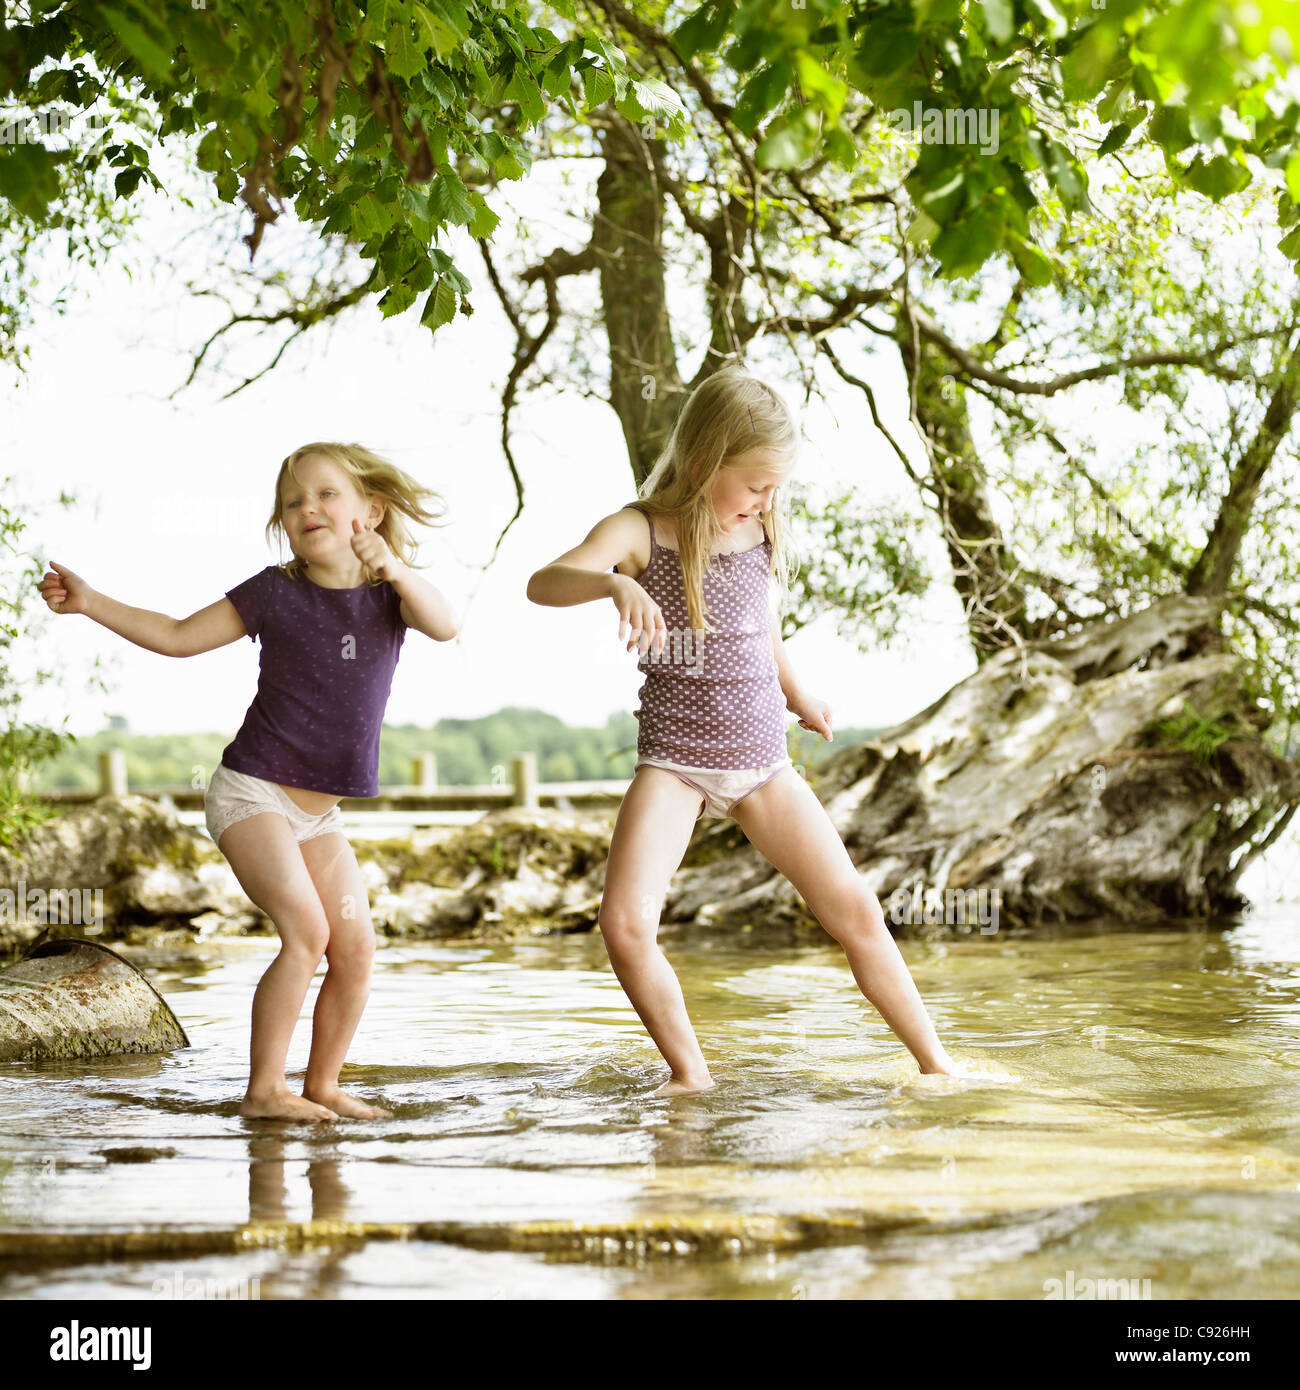 Lächelnde Mädchen spielen im See Stockfotografie - Alamy